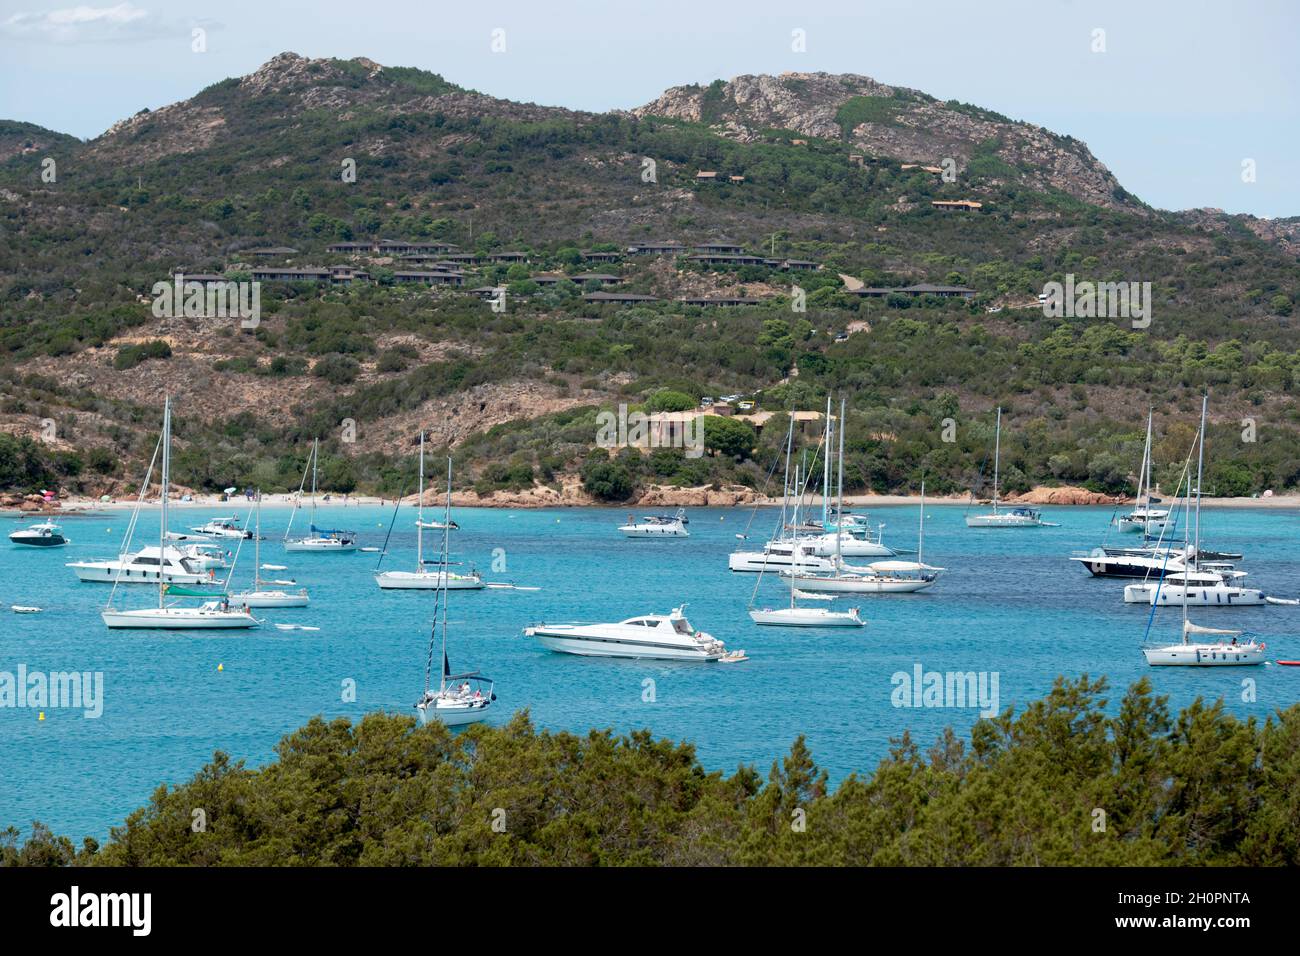 Corse: Baie de Santa Giulia avec des bateaux au point d'ancrage et à l'eau translucide, en Corse du Sud Banque D'Images